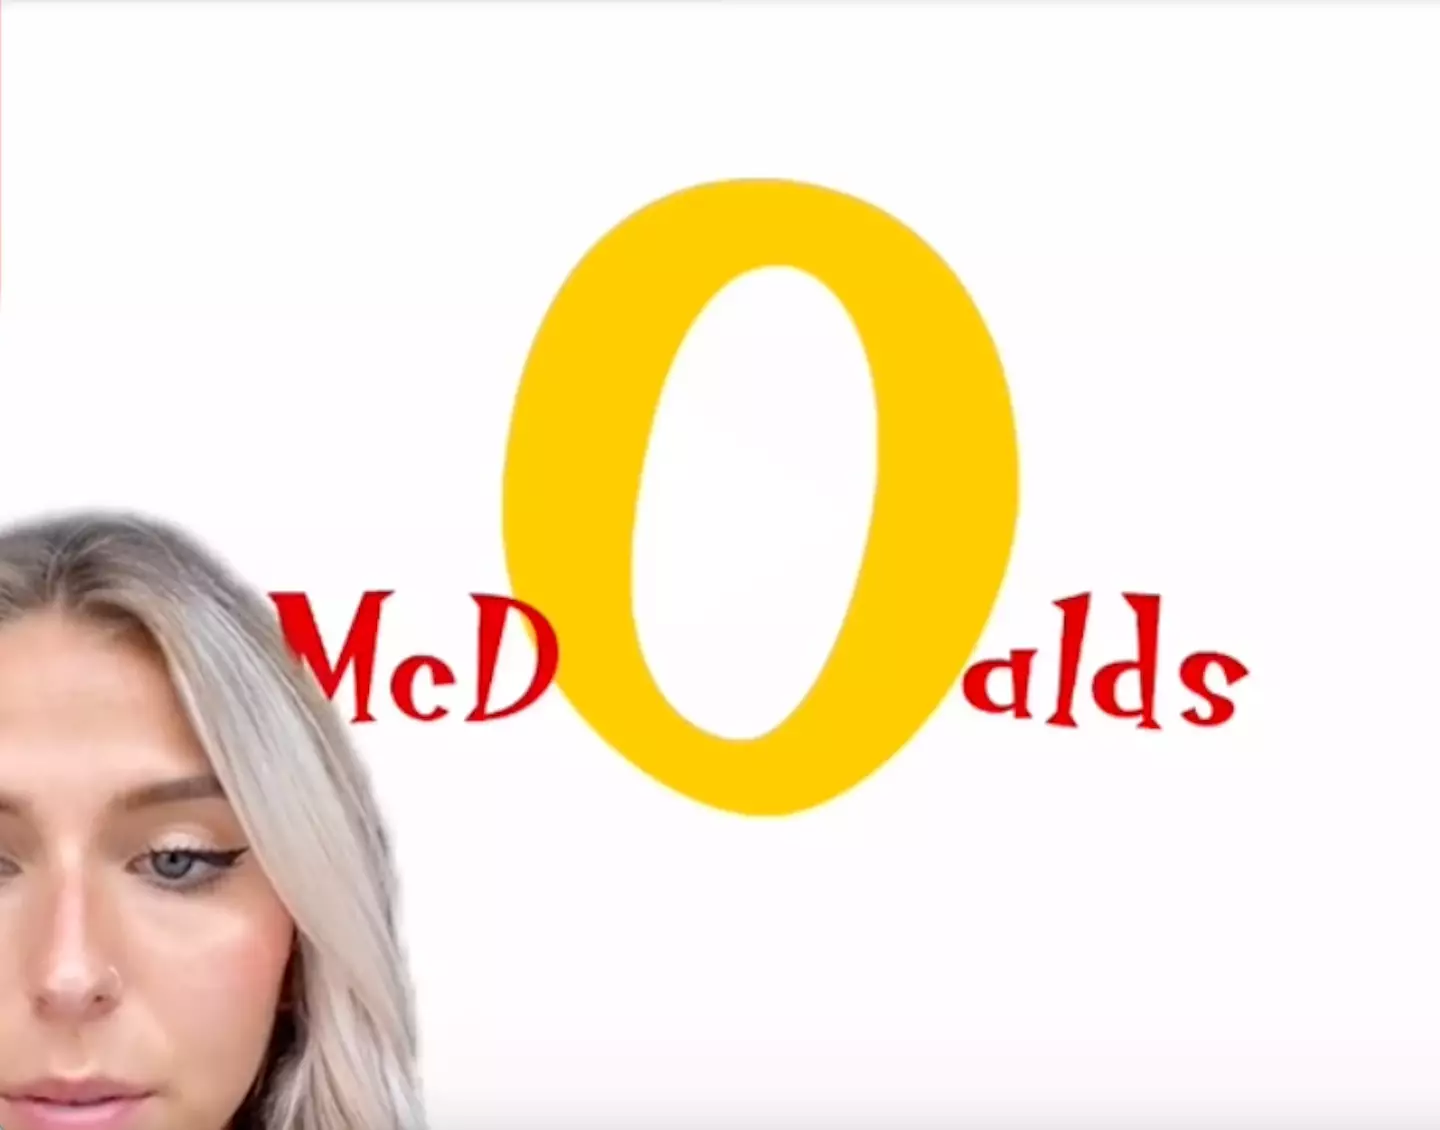 McDonald's loved Emily's design (